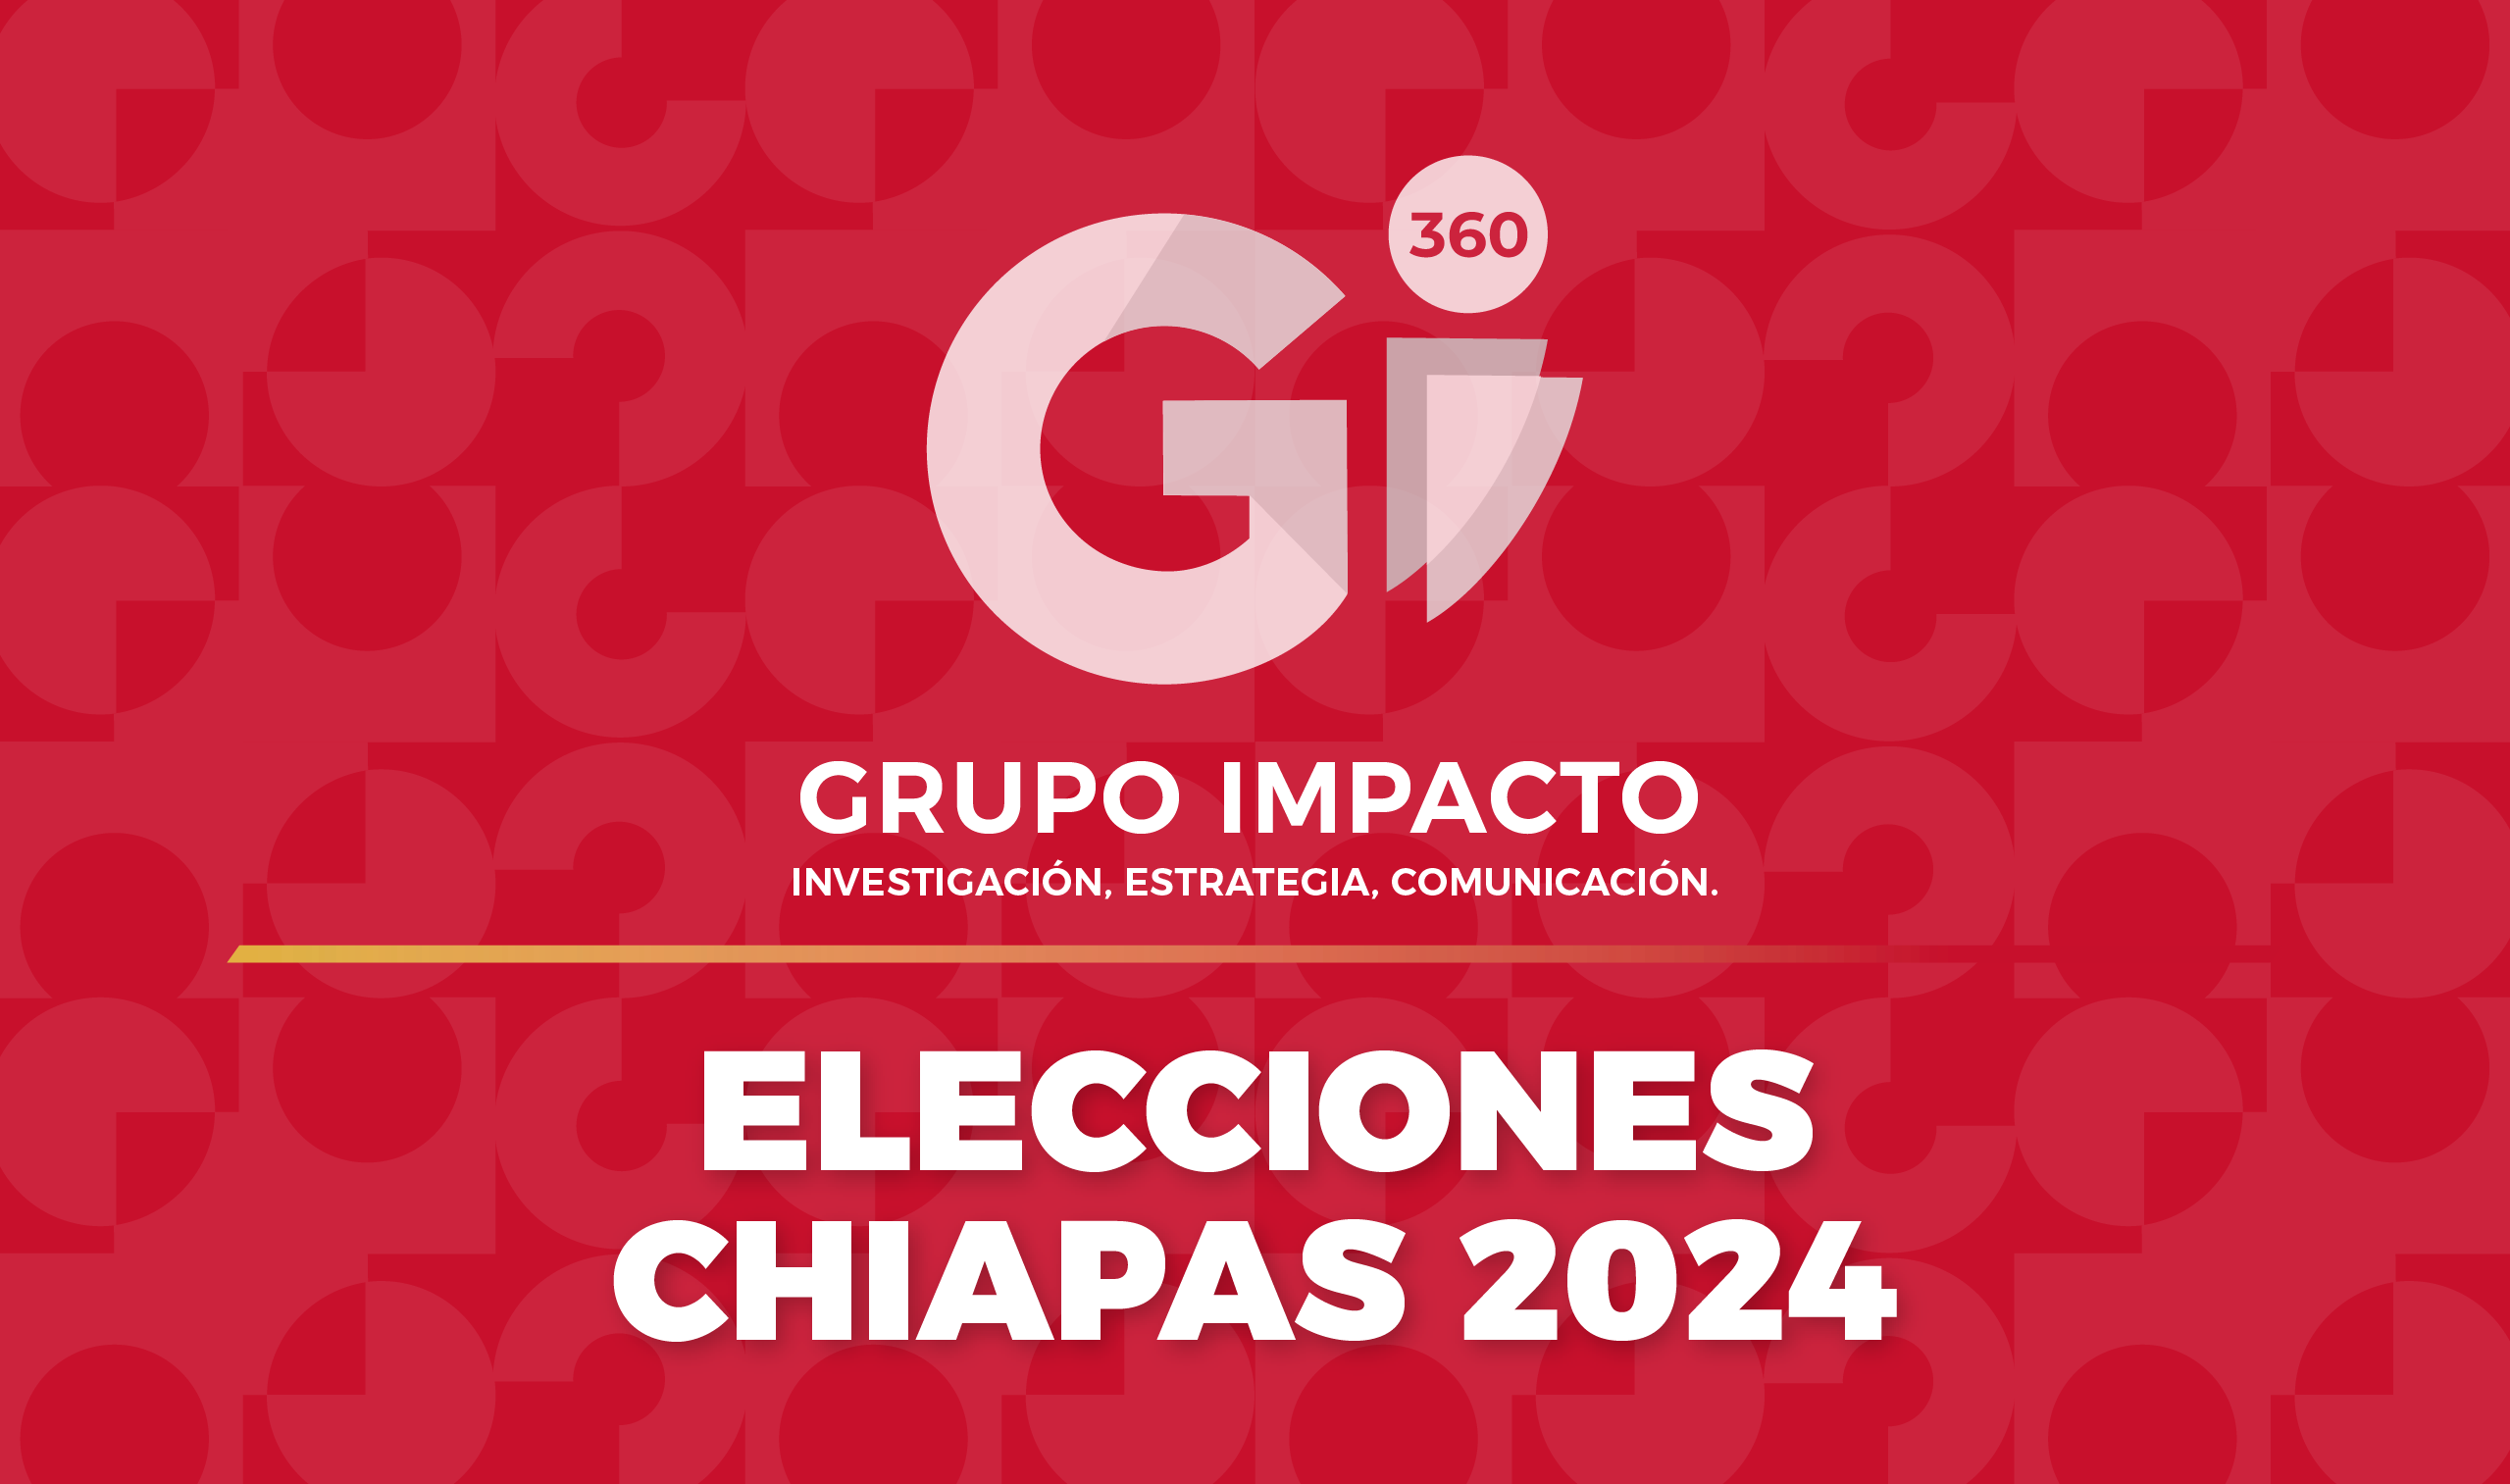 ELECCIONES CHIAPAS 2024 Gii360